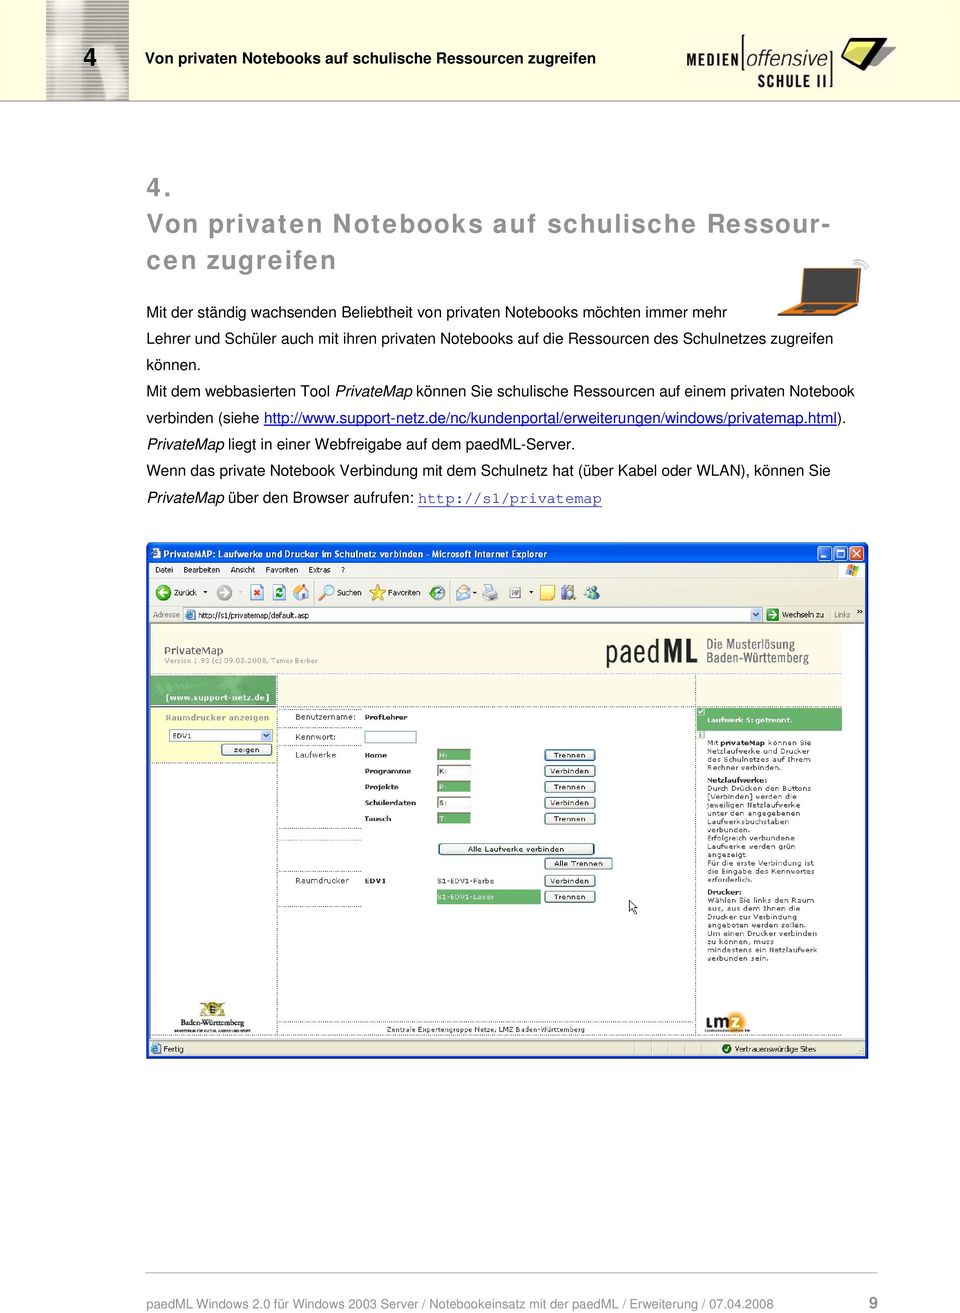 die Ressourcen des Schulnetzes zugreifen können. Mit dem webbasierten Tool PrivateMap können Sie schulische Ressourcen auf einem privaten Notebook verbinden (siehe http://www.support-netz.